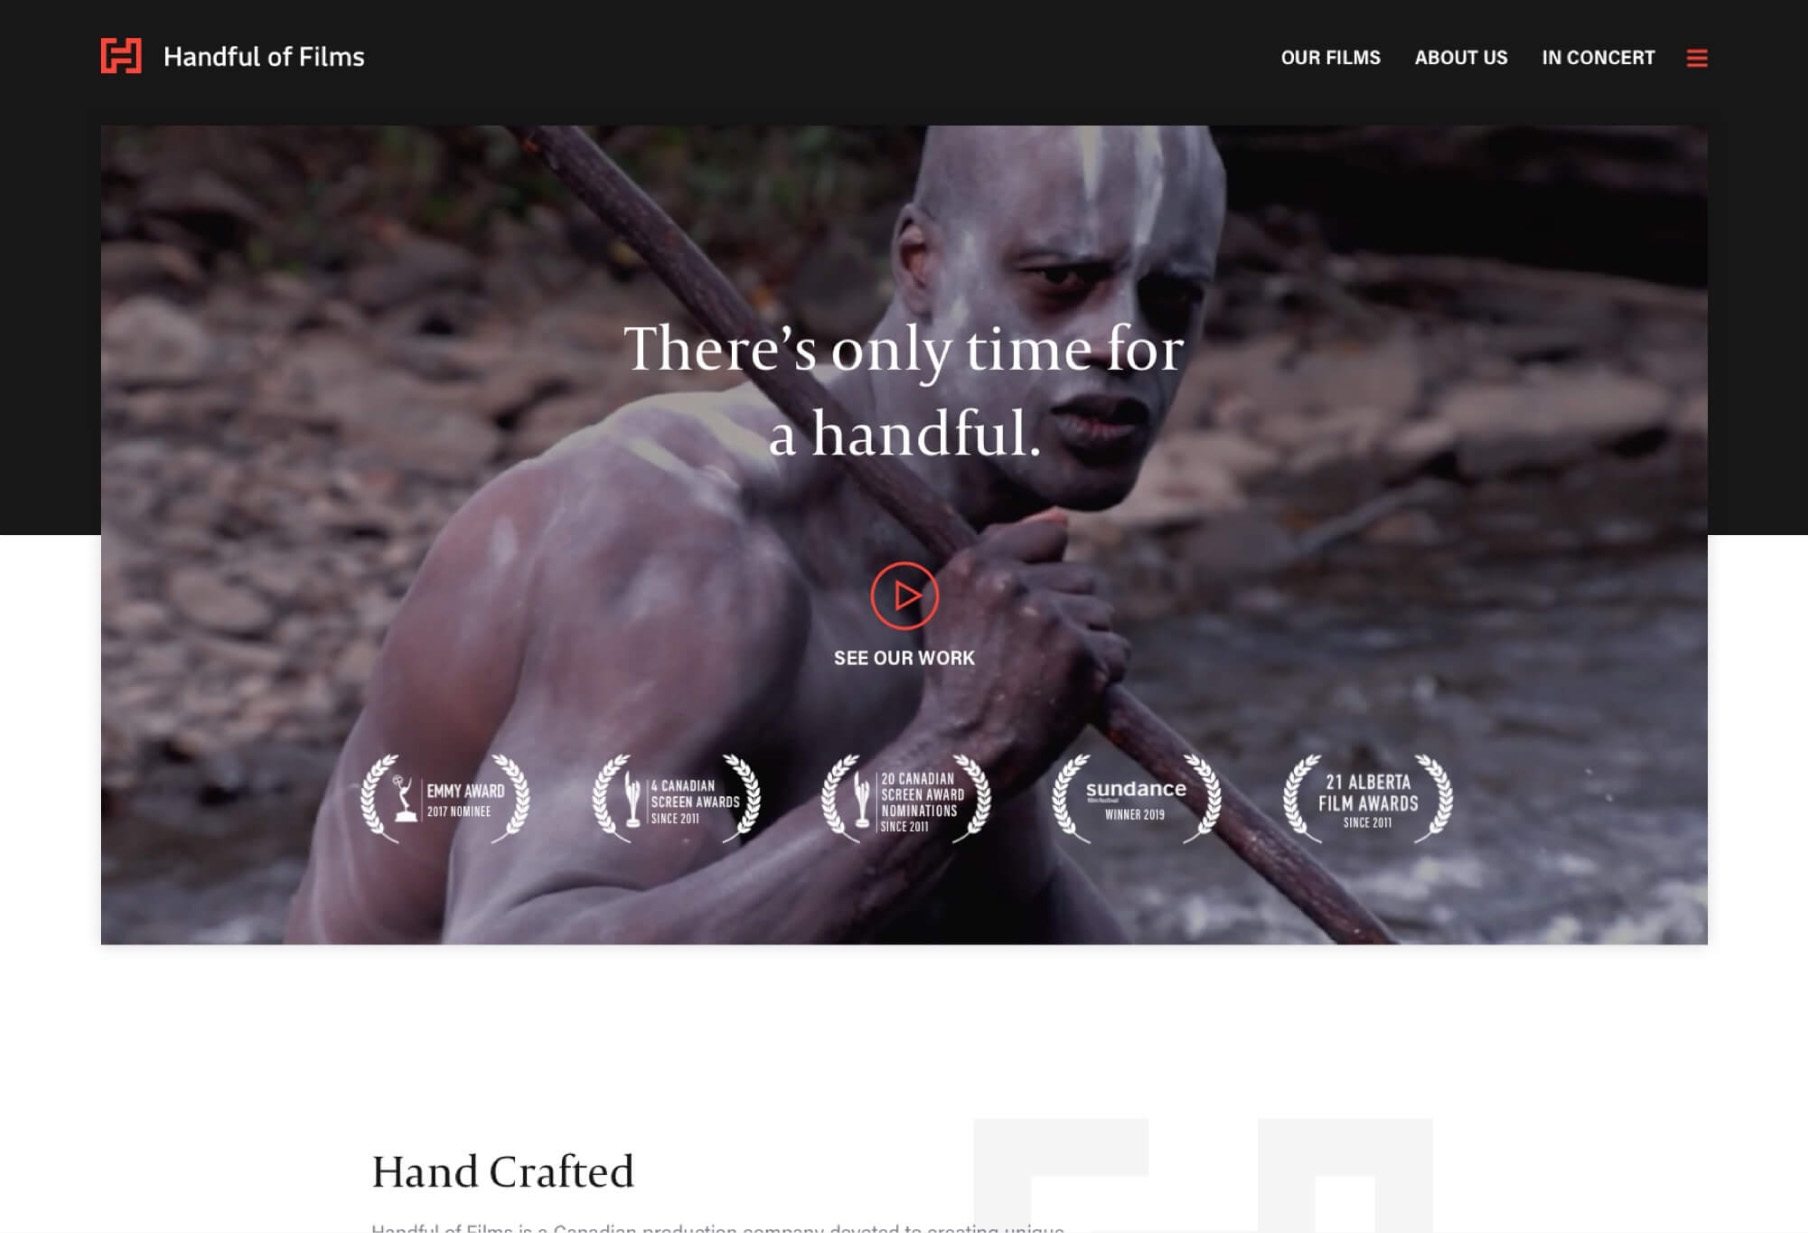 Homepage screenshot of the Handful of Films website